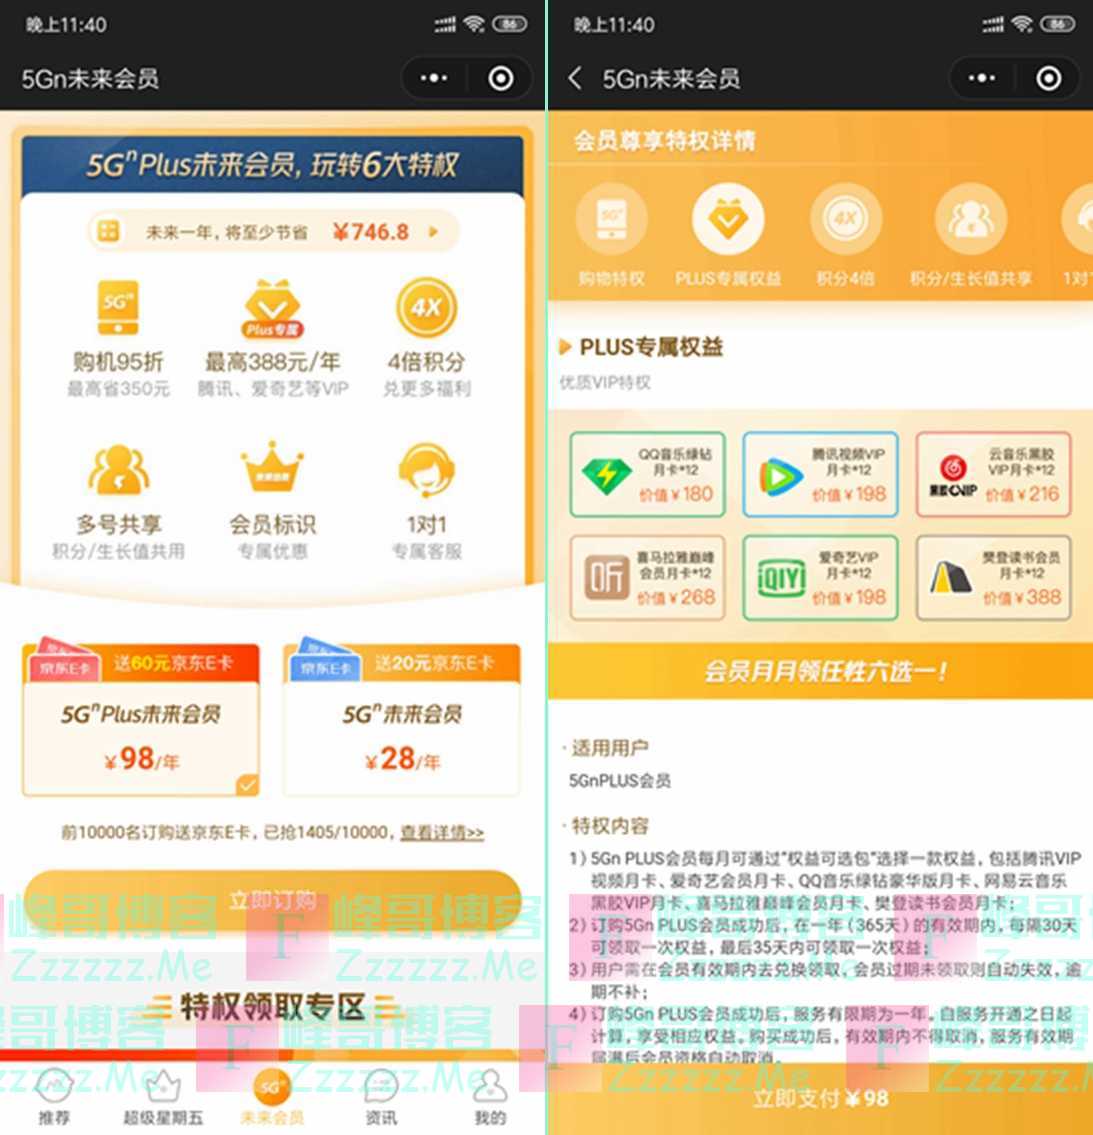 广东联通用户38元开通一年腾讯视频,QQ绿钻,网易云黑胶会员,爱奇艺VIP等